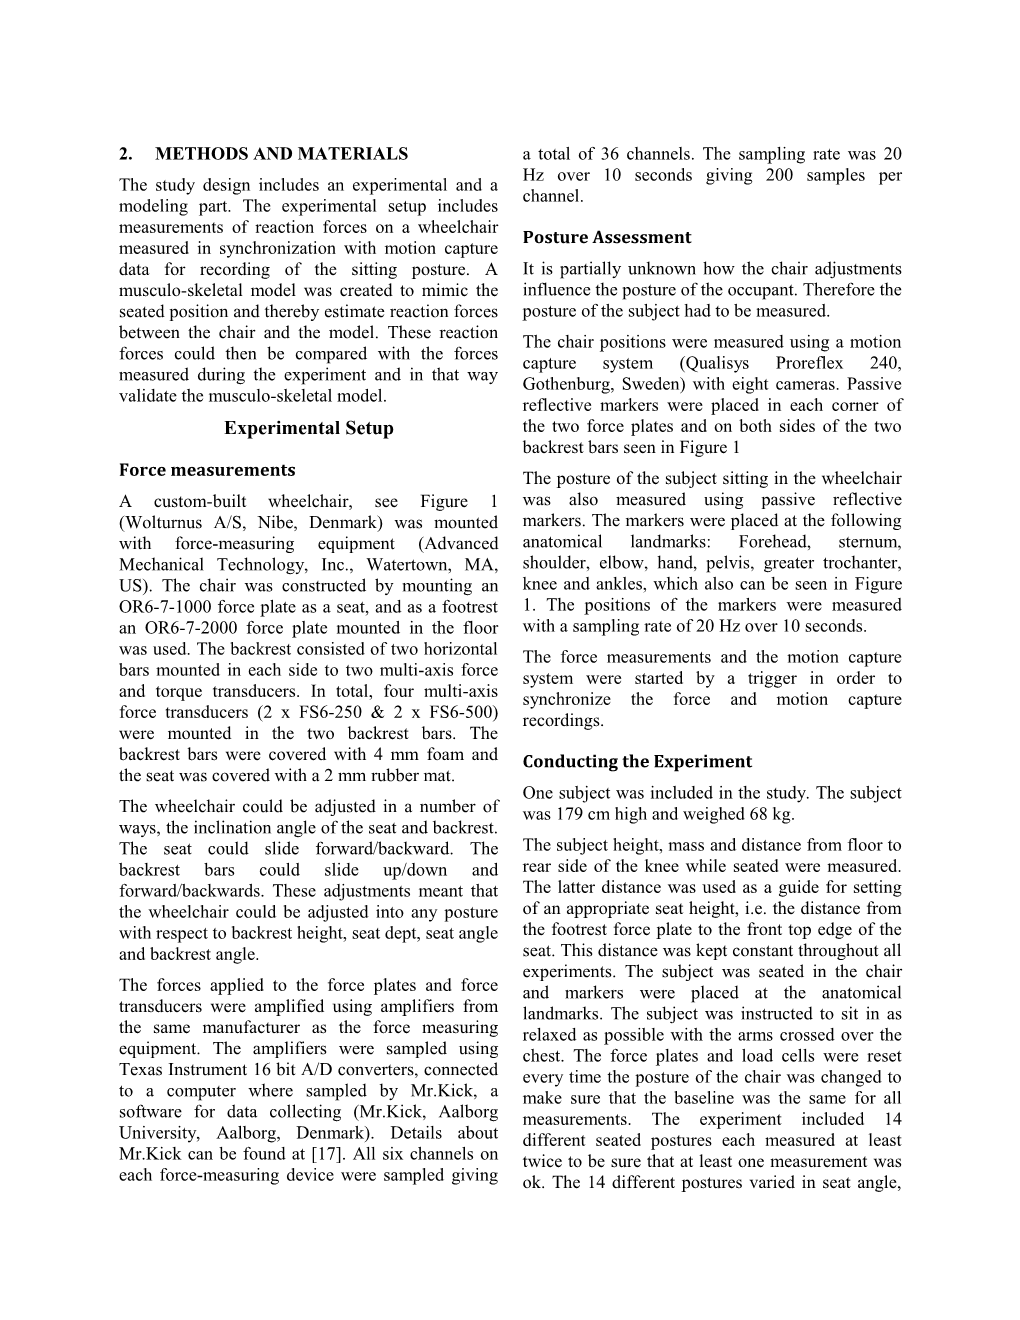 AUPEC 2004 Full Paper Template